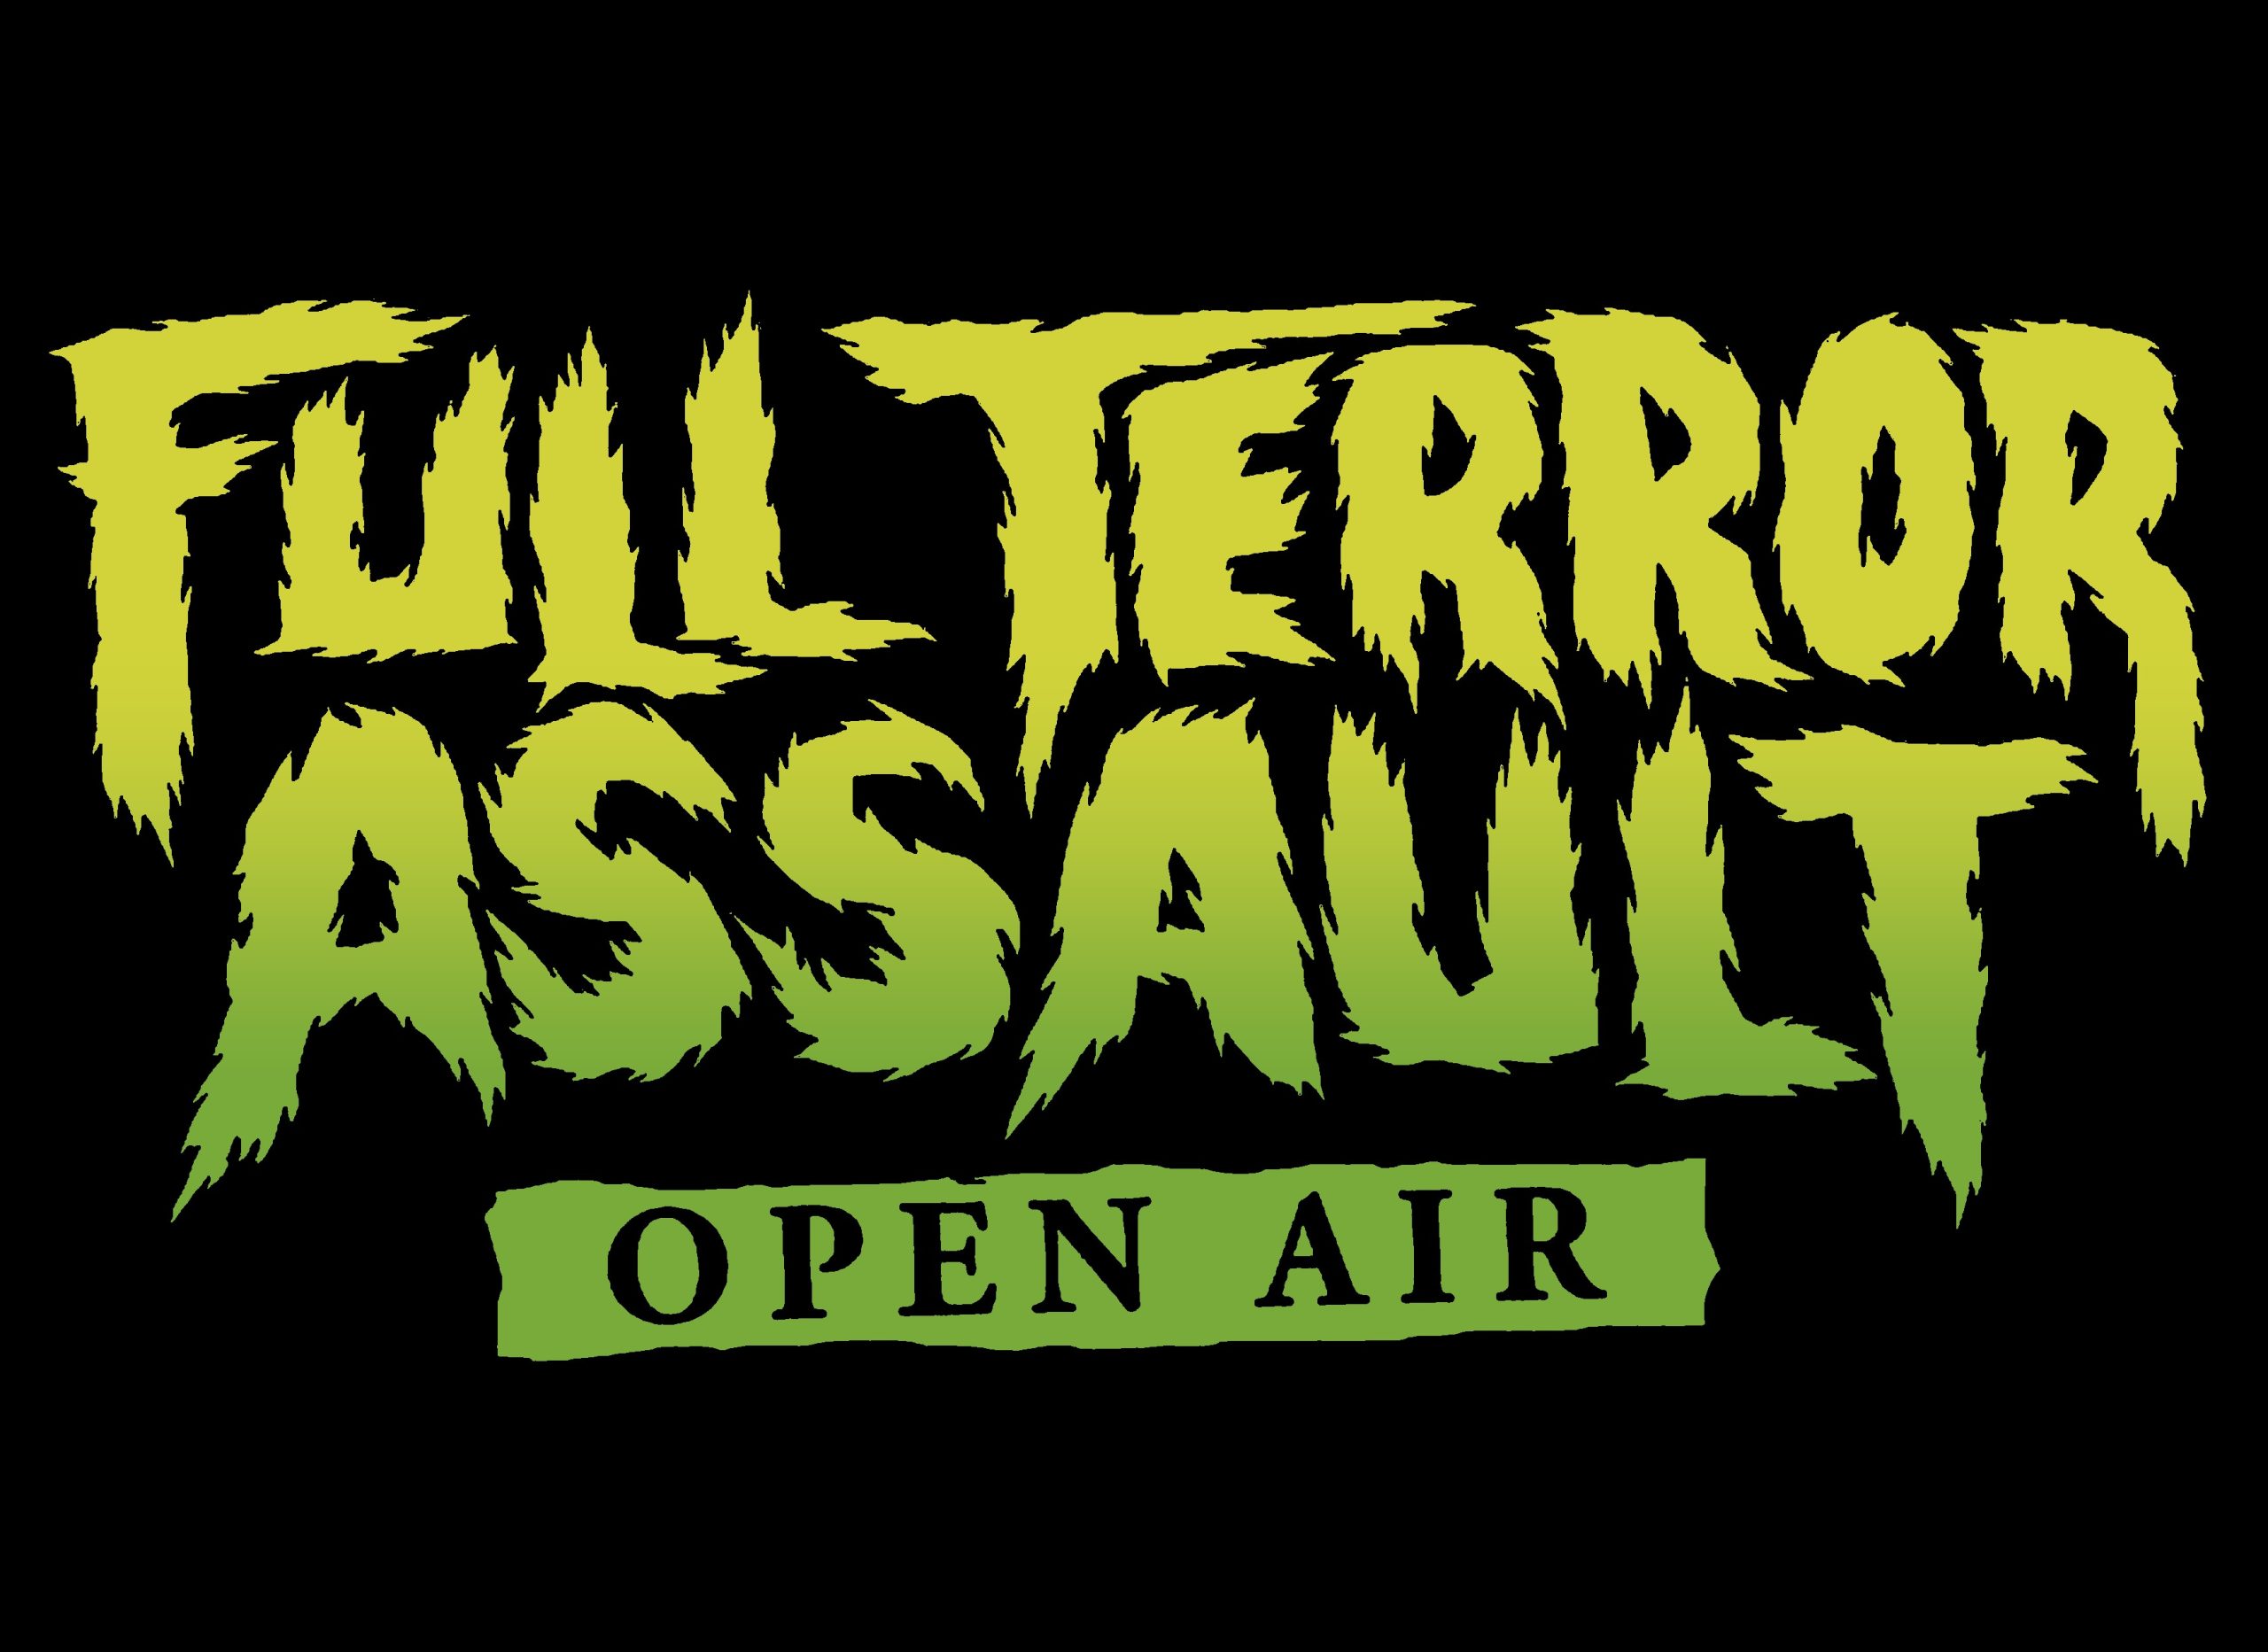 Full Terror Assault Open Air